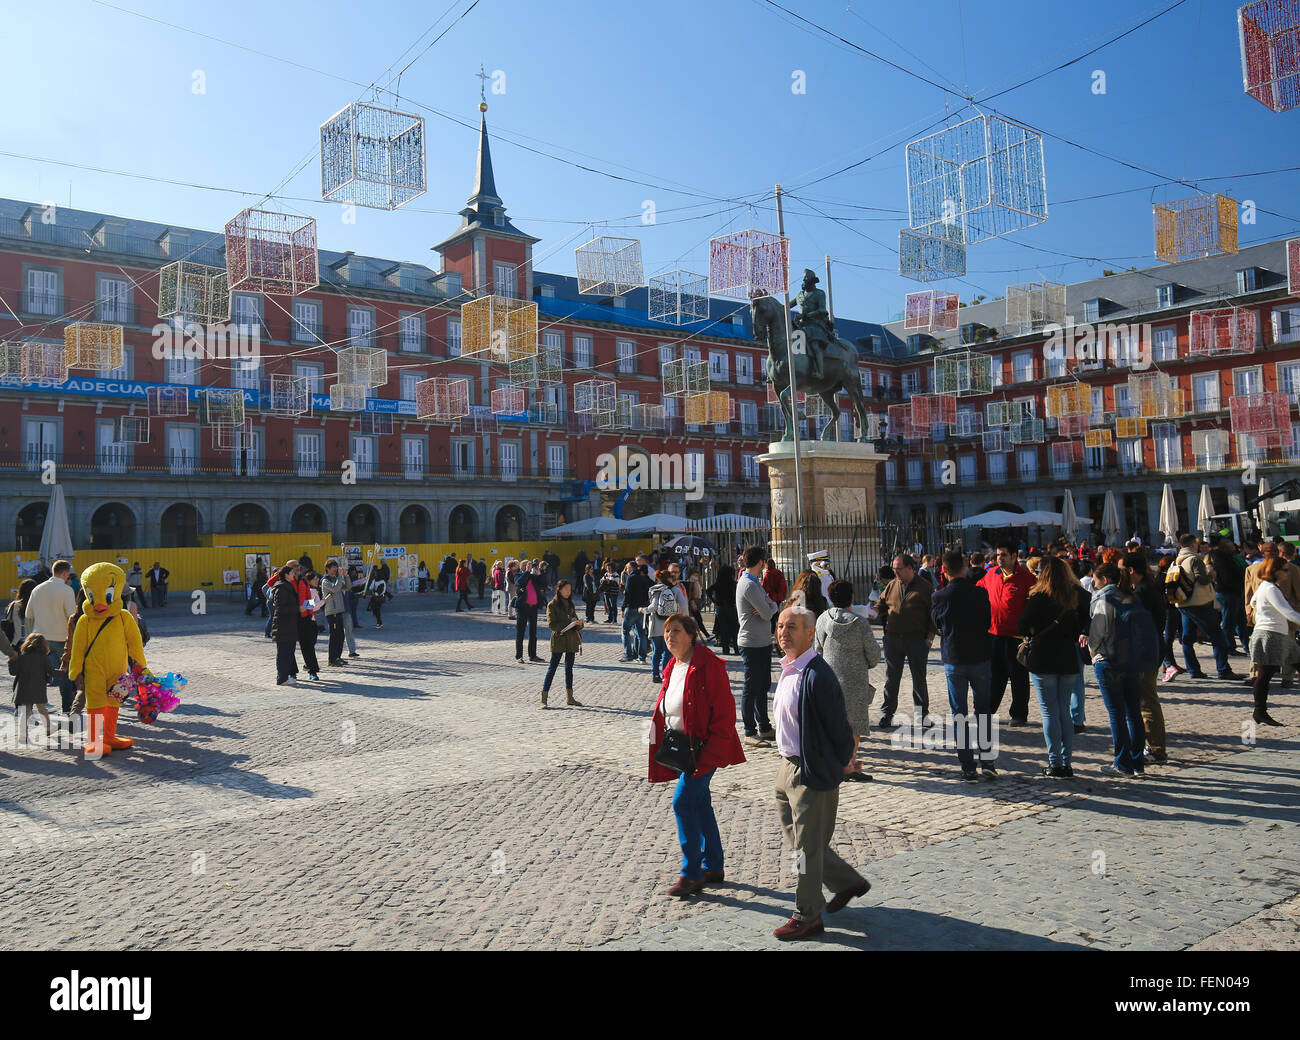 MADRID, Spagna - 14 novembre 2015: Plaza Mayor con la Casa de la Panaderia nel centro di Madrid, Spagna Foto Stock